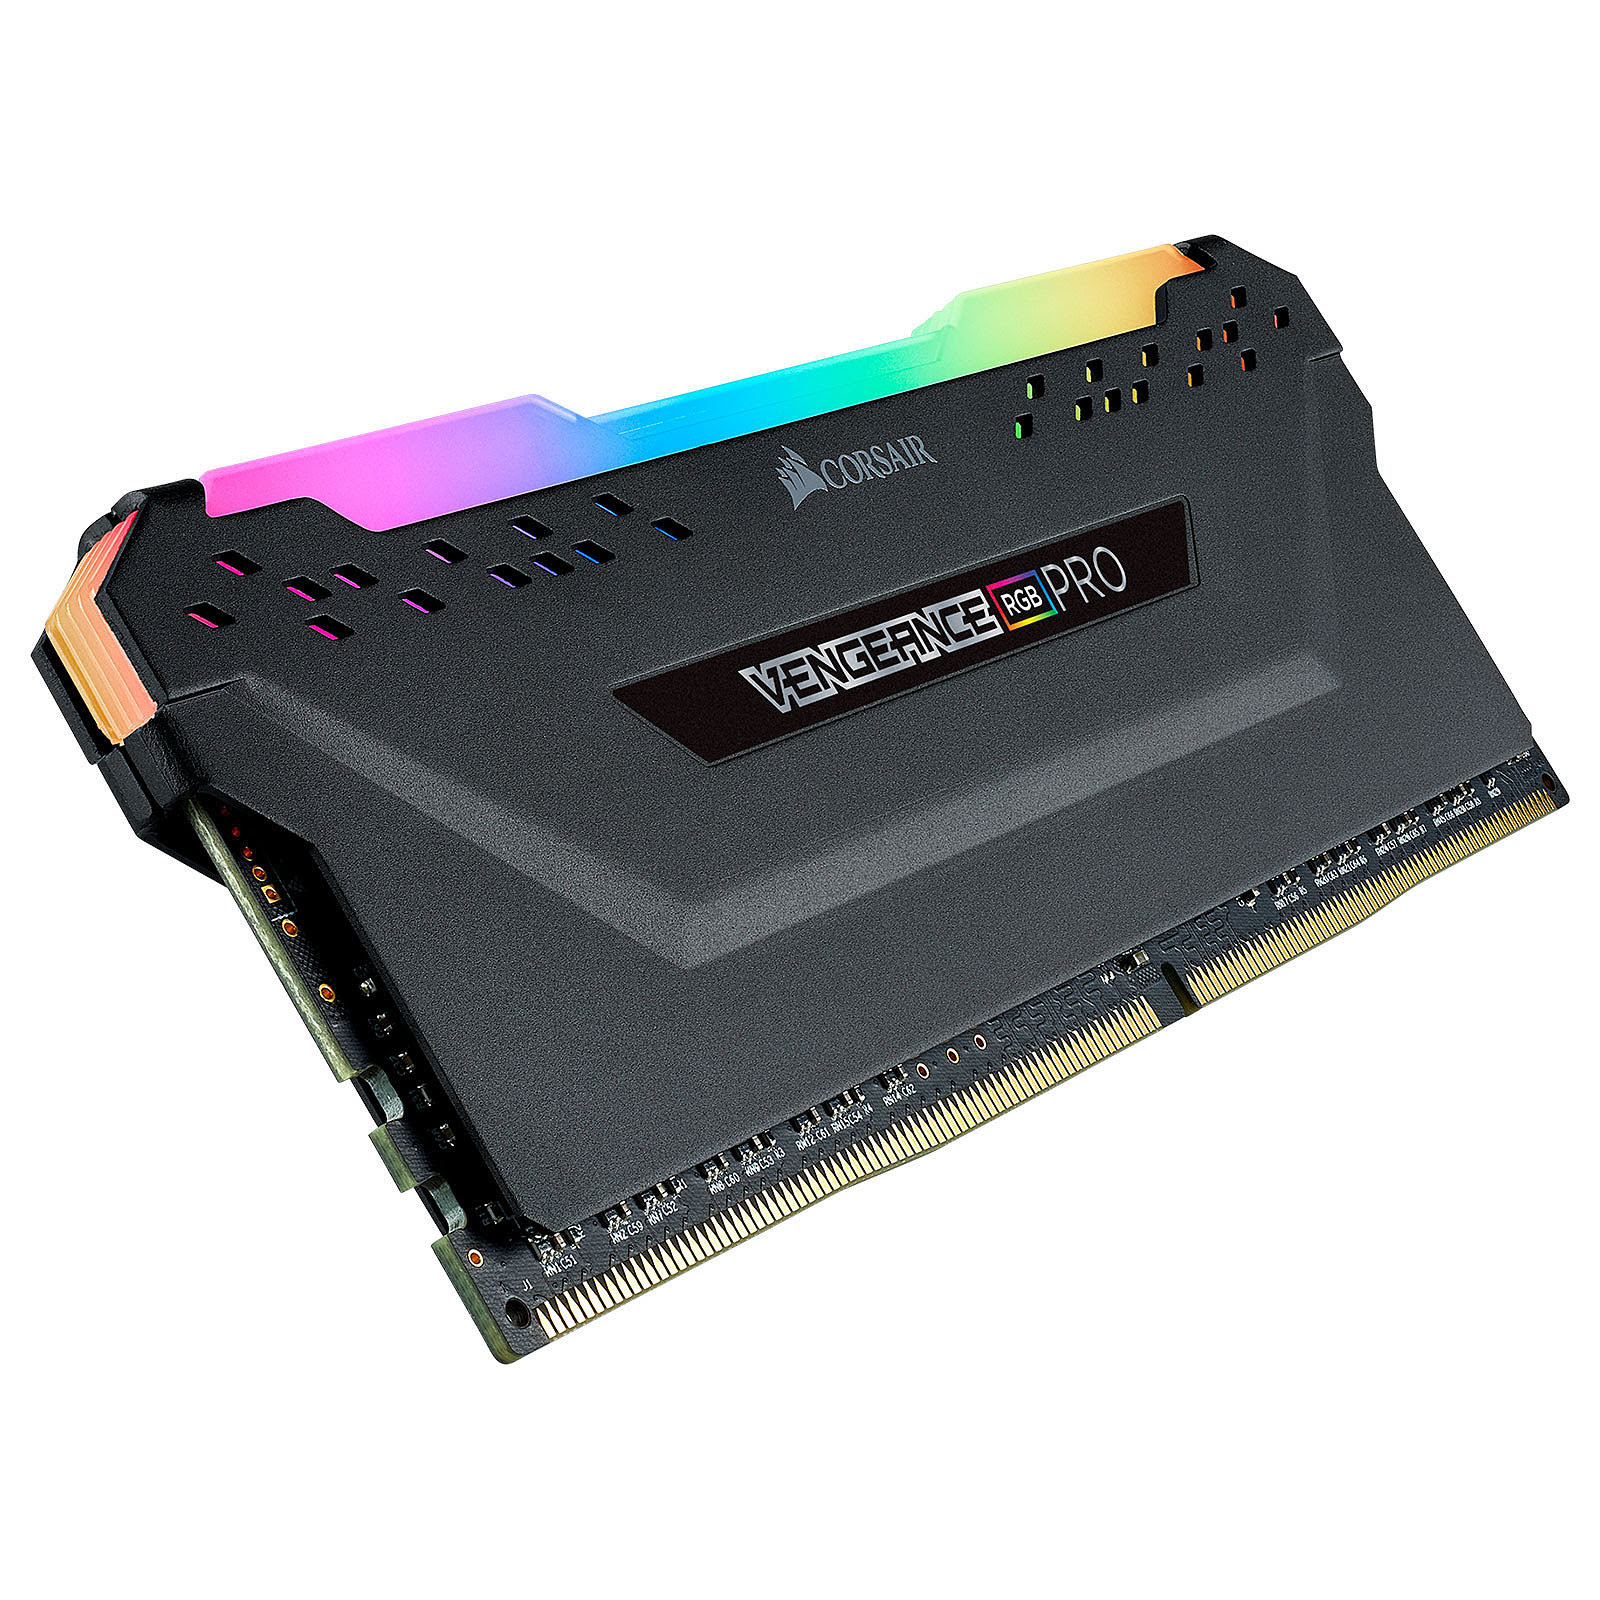 Corsair Vengeance RGB Pro 16Go (1x16Go) DDR4 3600MHz - Mémoire PC Corsair sur grosbill-pro.com - 3